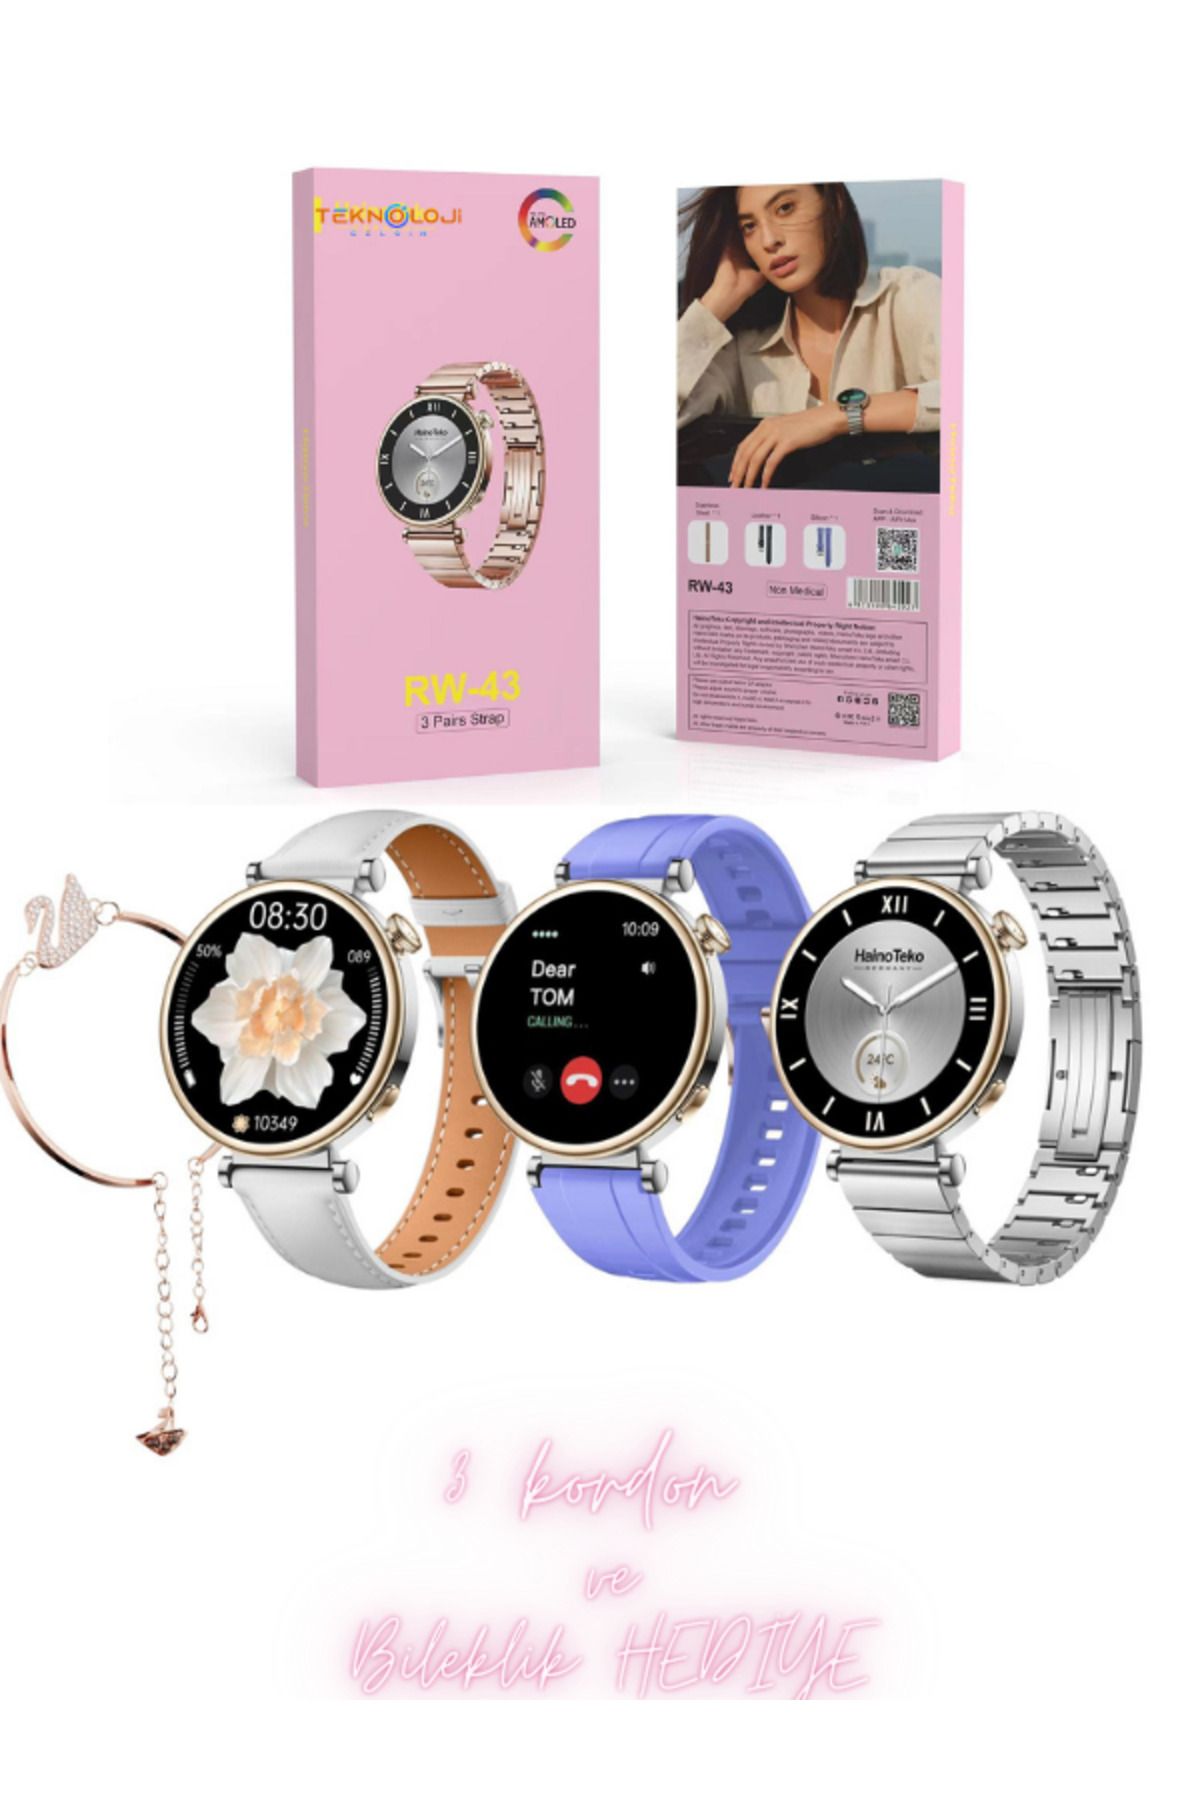 Teknoloji Gelsin Smart Watch Kadın Akıllı Saat Türkçe Menü Amoled Ekran 3 Kordon ve Bileklik Hediye IosveAndroid Uyum